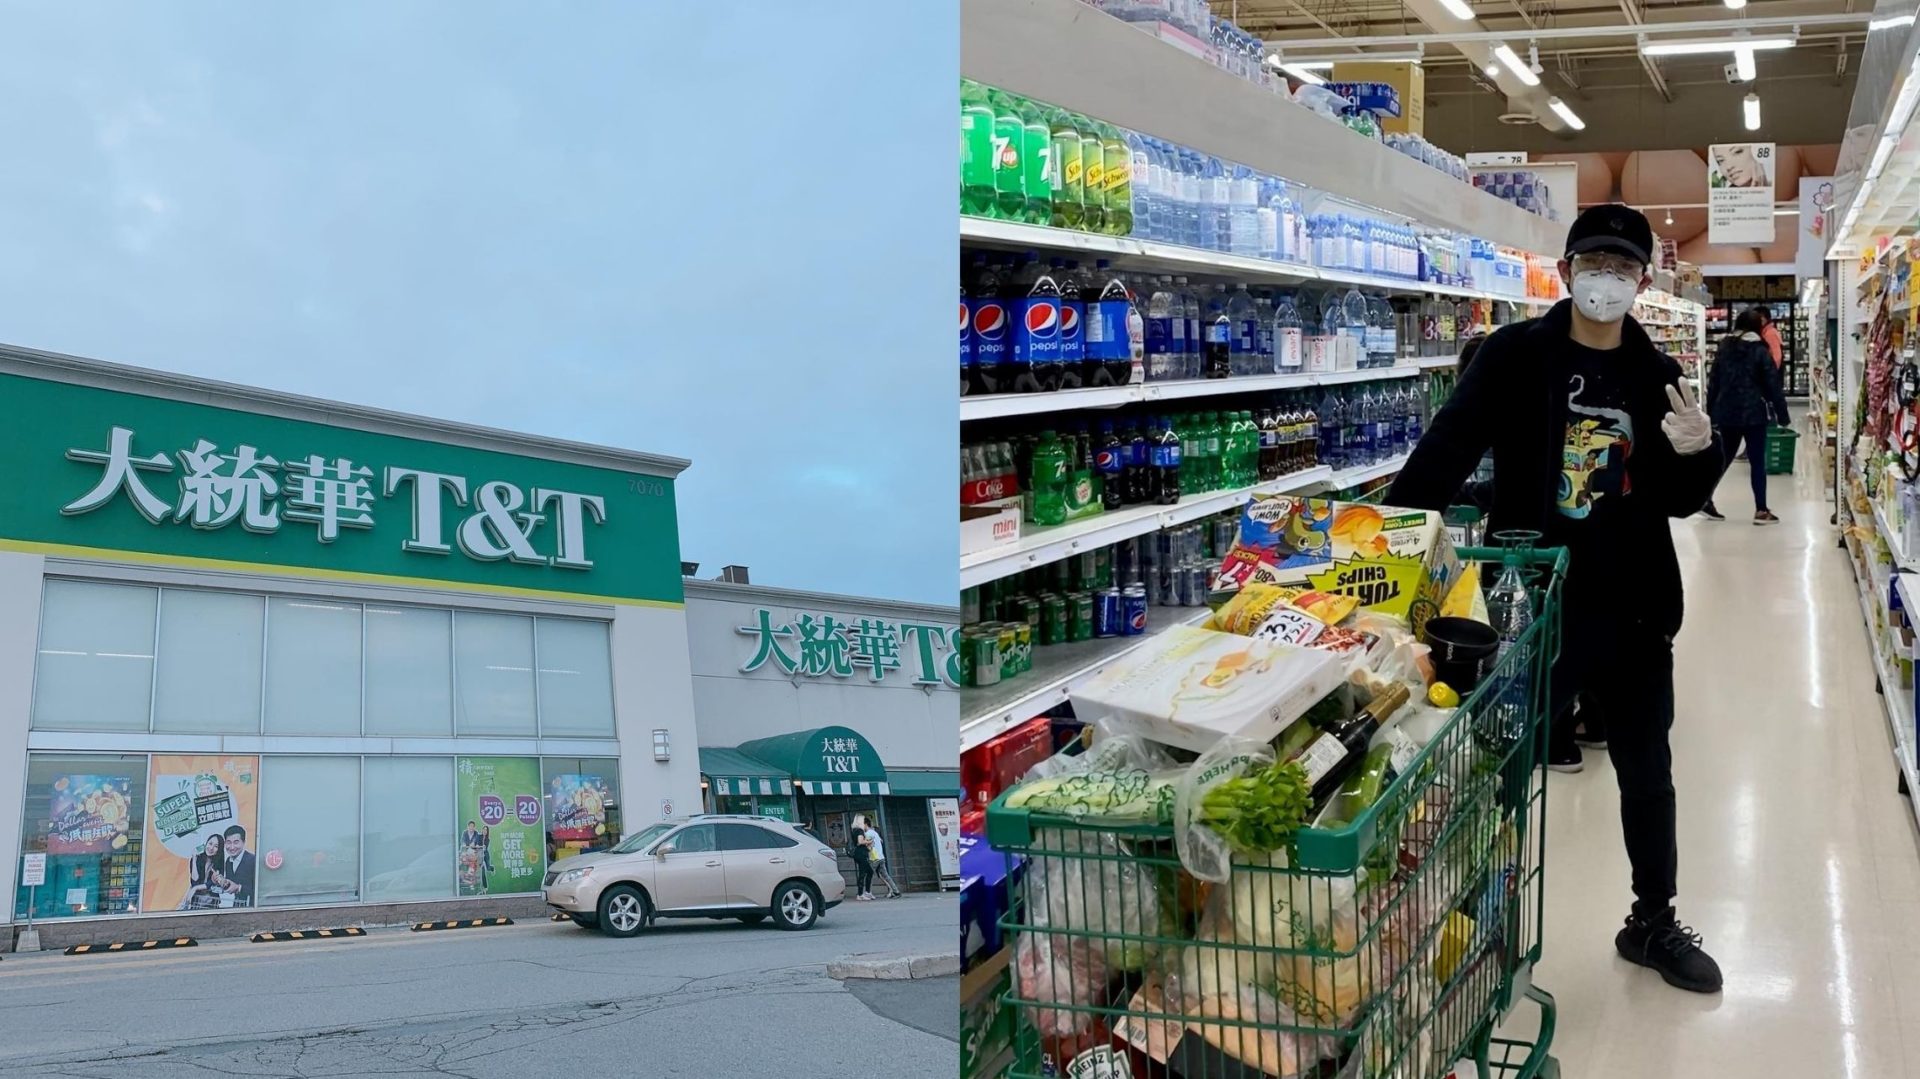 Une épicerie asiatique a ouvert à Nousty - La République des